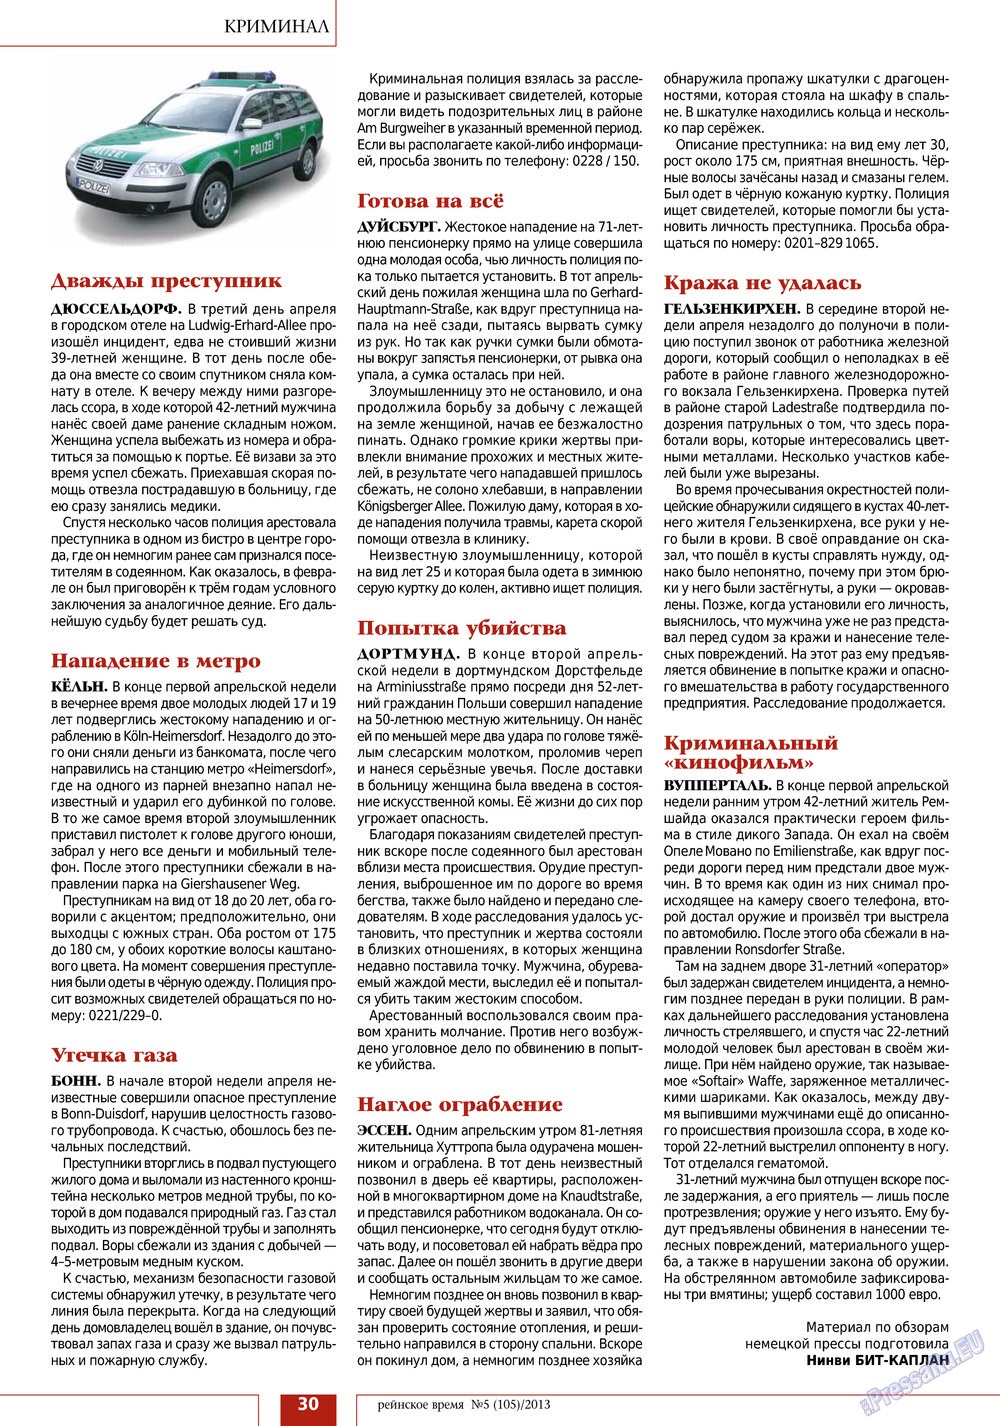 Рейнское время (журнал). 2013 год, номер 5, стр. 30